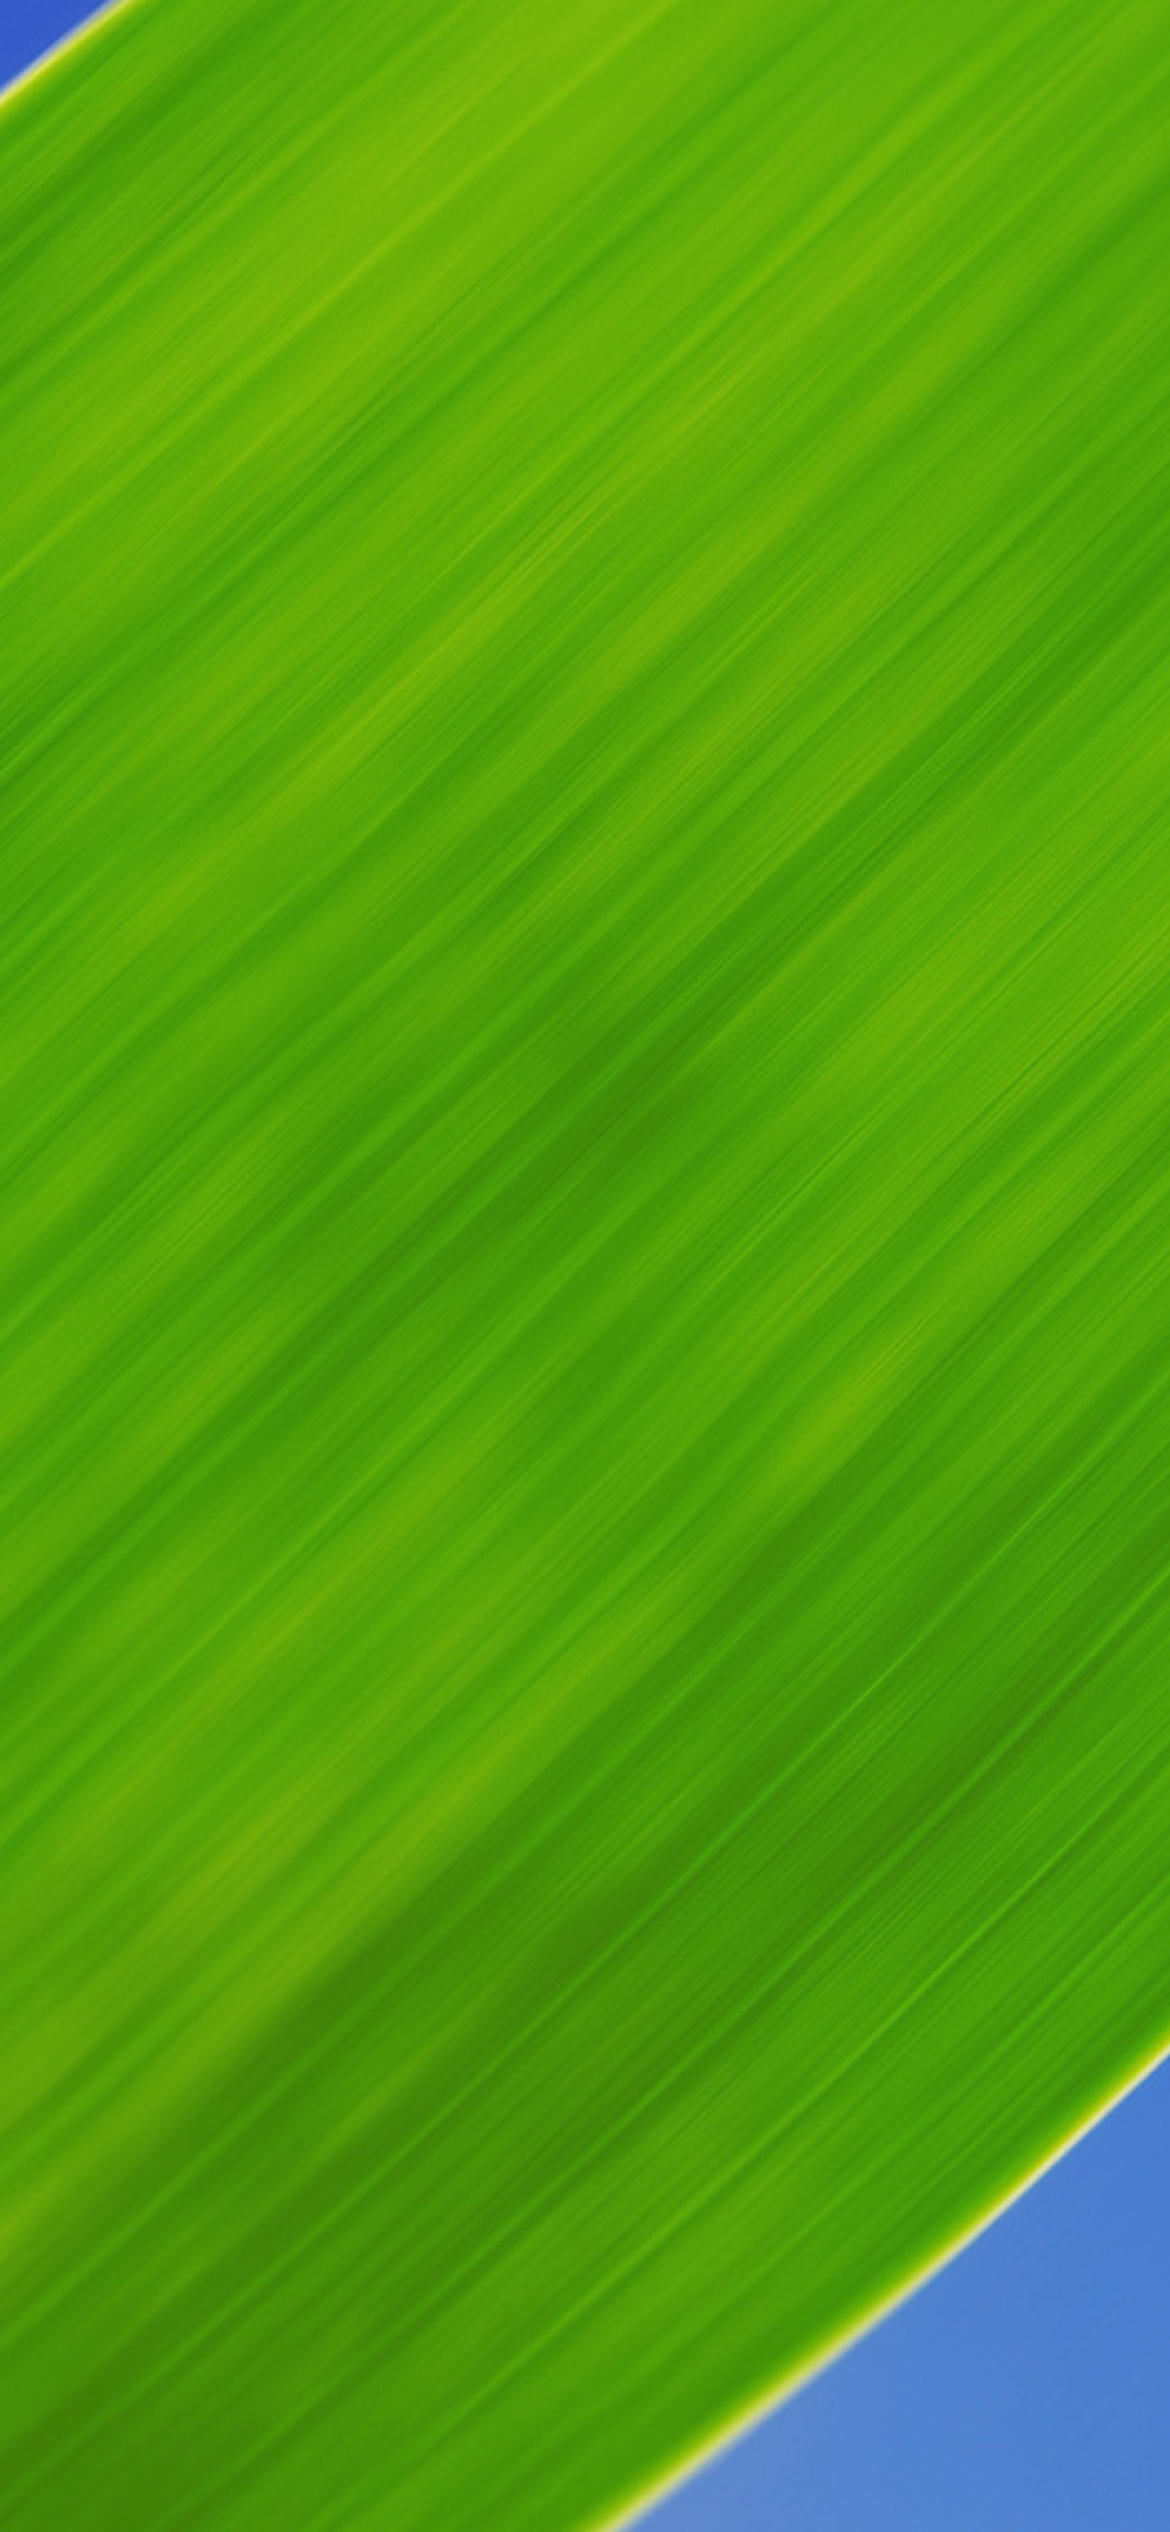 Green Grass Close Up screenshot #1 1170x2532